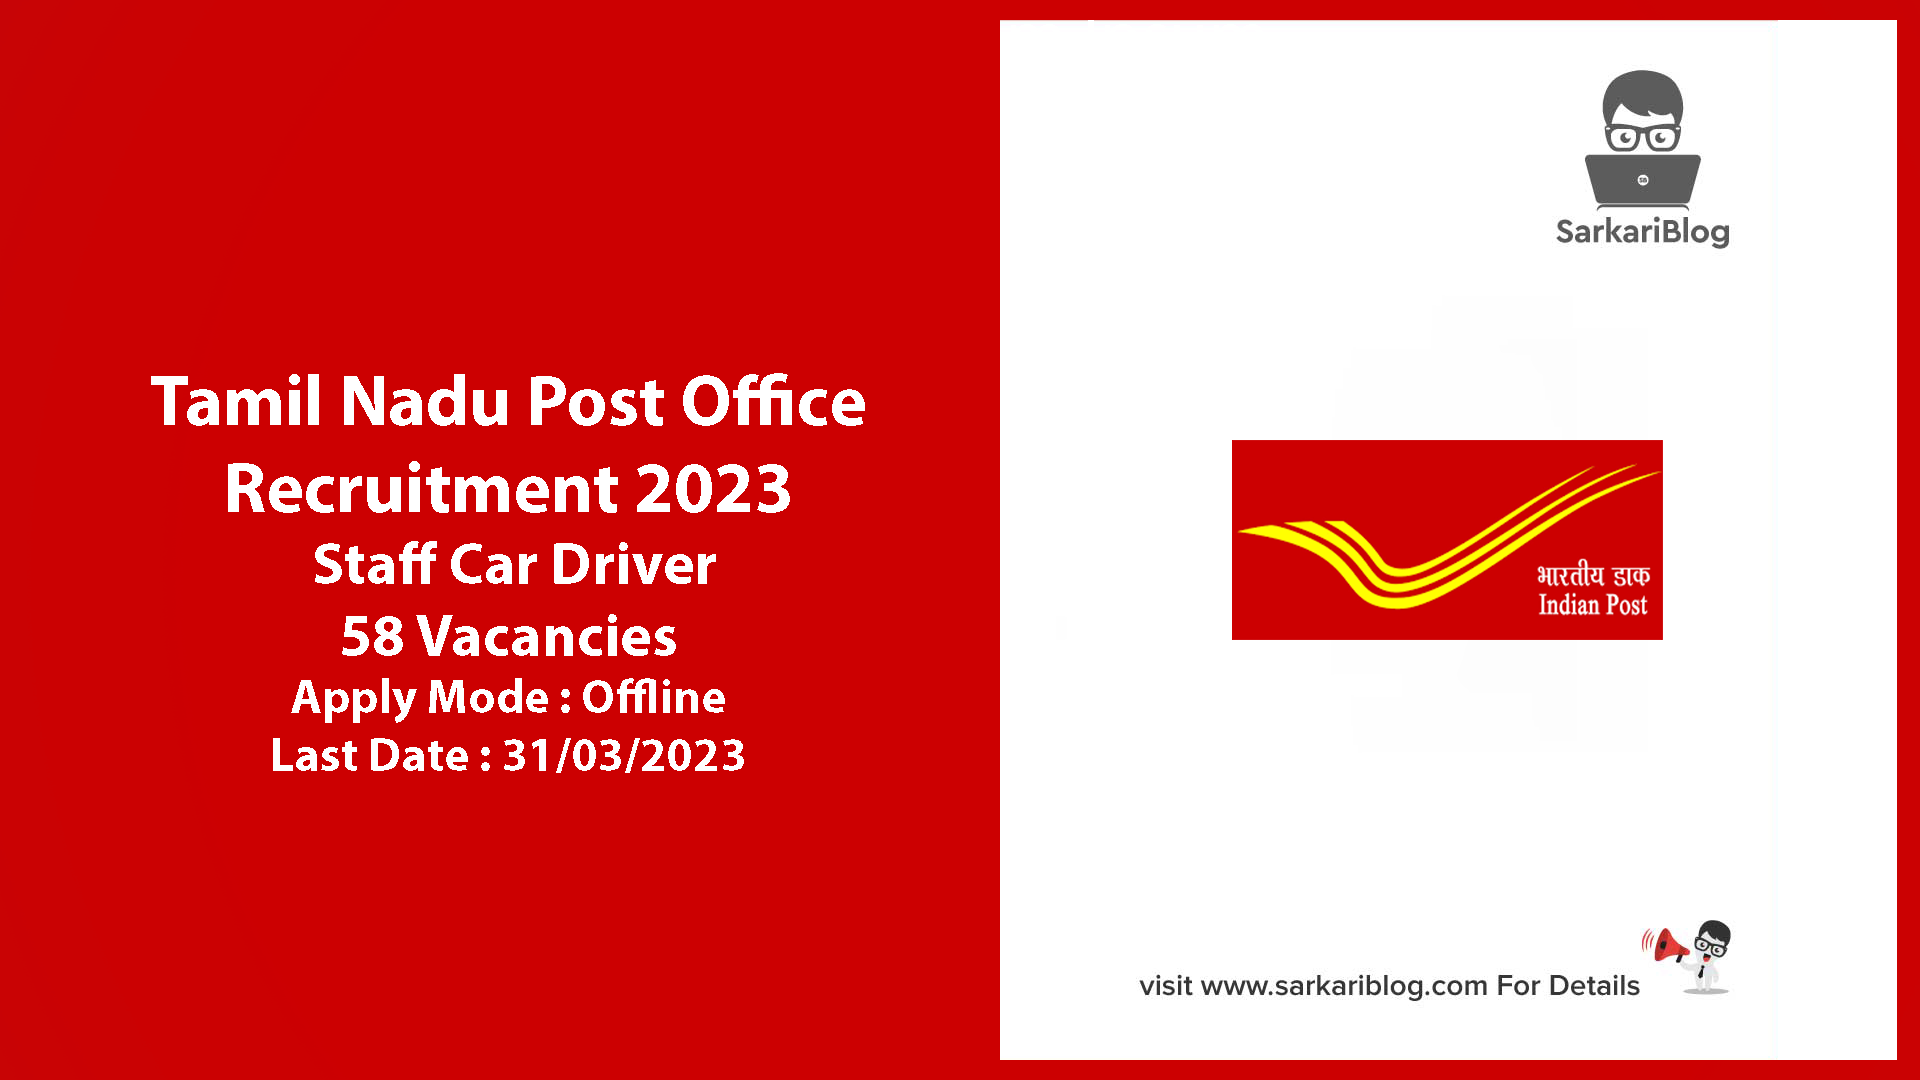 Tamil Nadu Post Office Recruitment 2023 | Tamil Nadu Post Office Recruitment 2023, Staff Car Driver | 58 Vacancies 